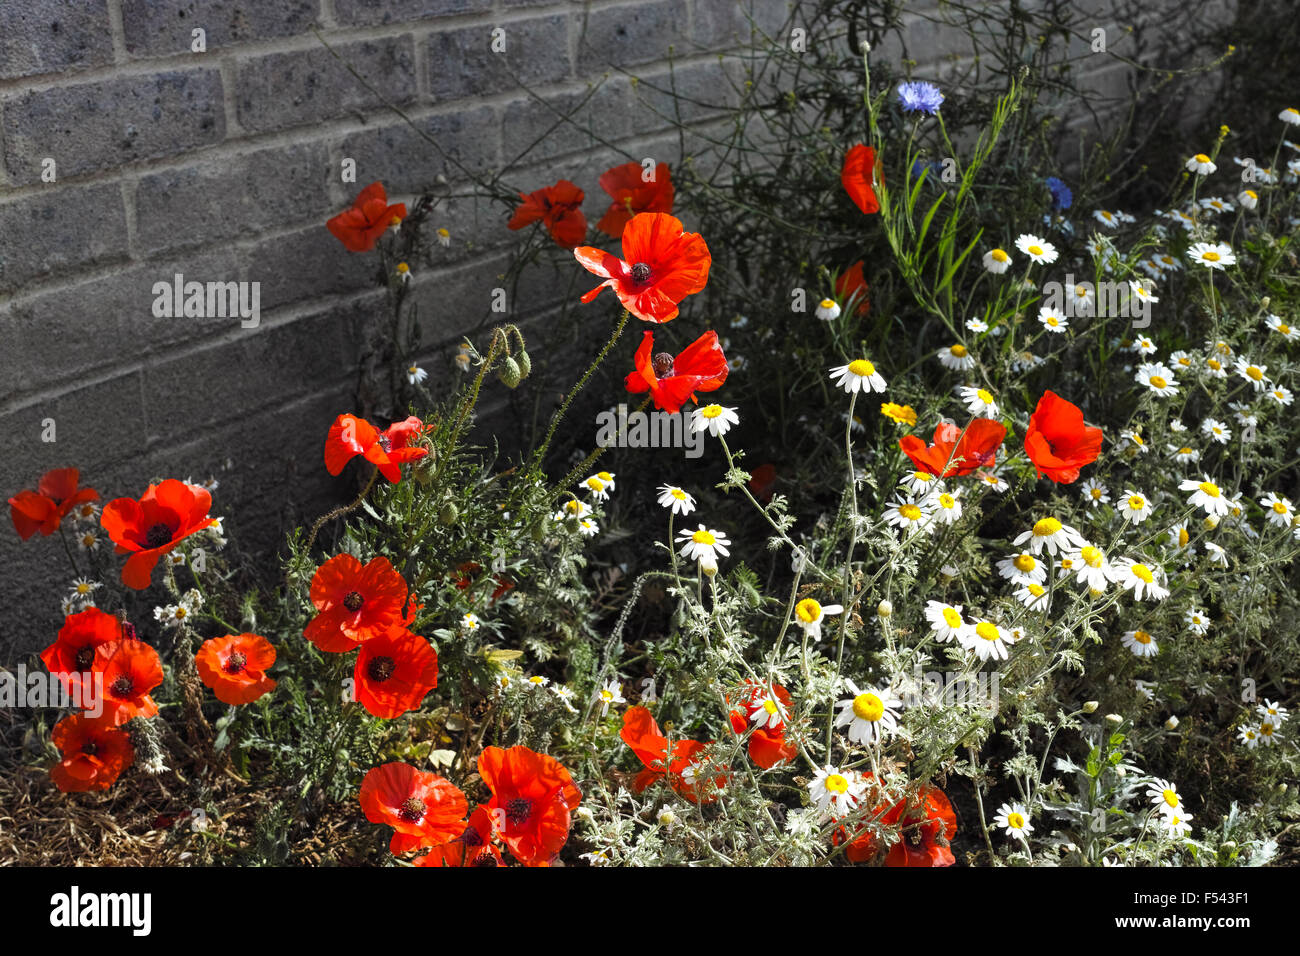 Des coquelicots sauvages en fleur parmi d'autres fleurs sauvages dans un environnement urbain Banque D'Images